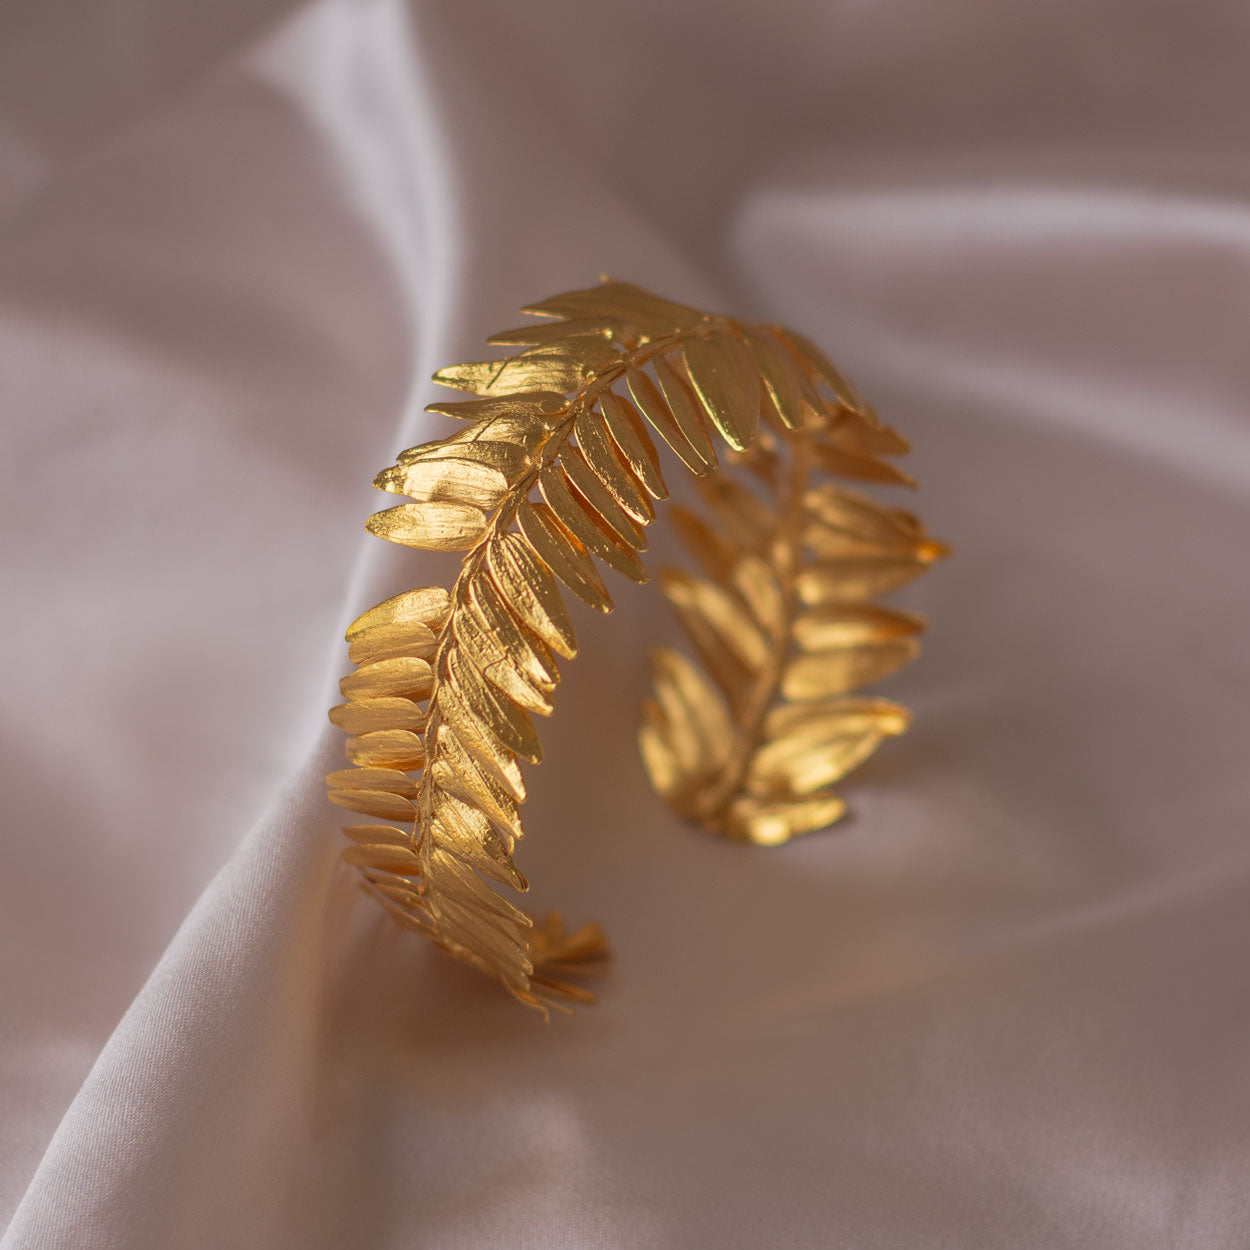 brazalete-artesanal-helecho-romeron-de-hojas-de-pino-en-bronce-enchapado-en-oro-24-kilates-unicidad-y-naturaleza